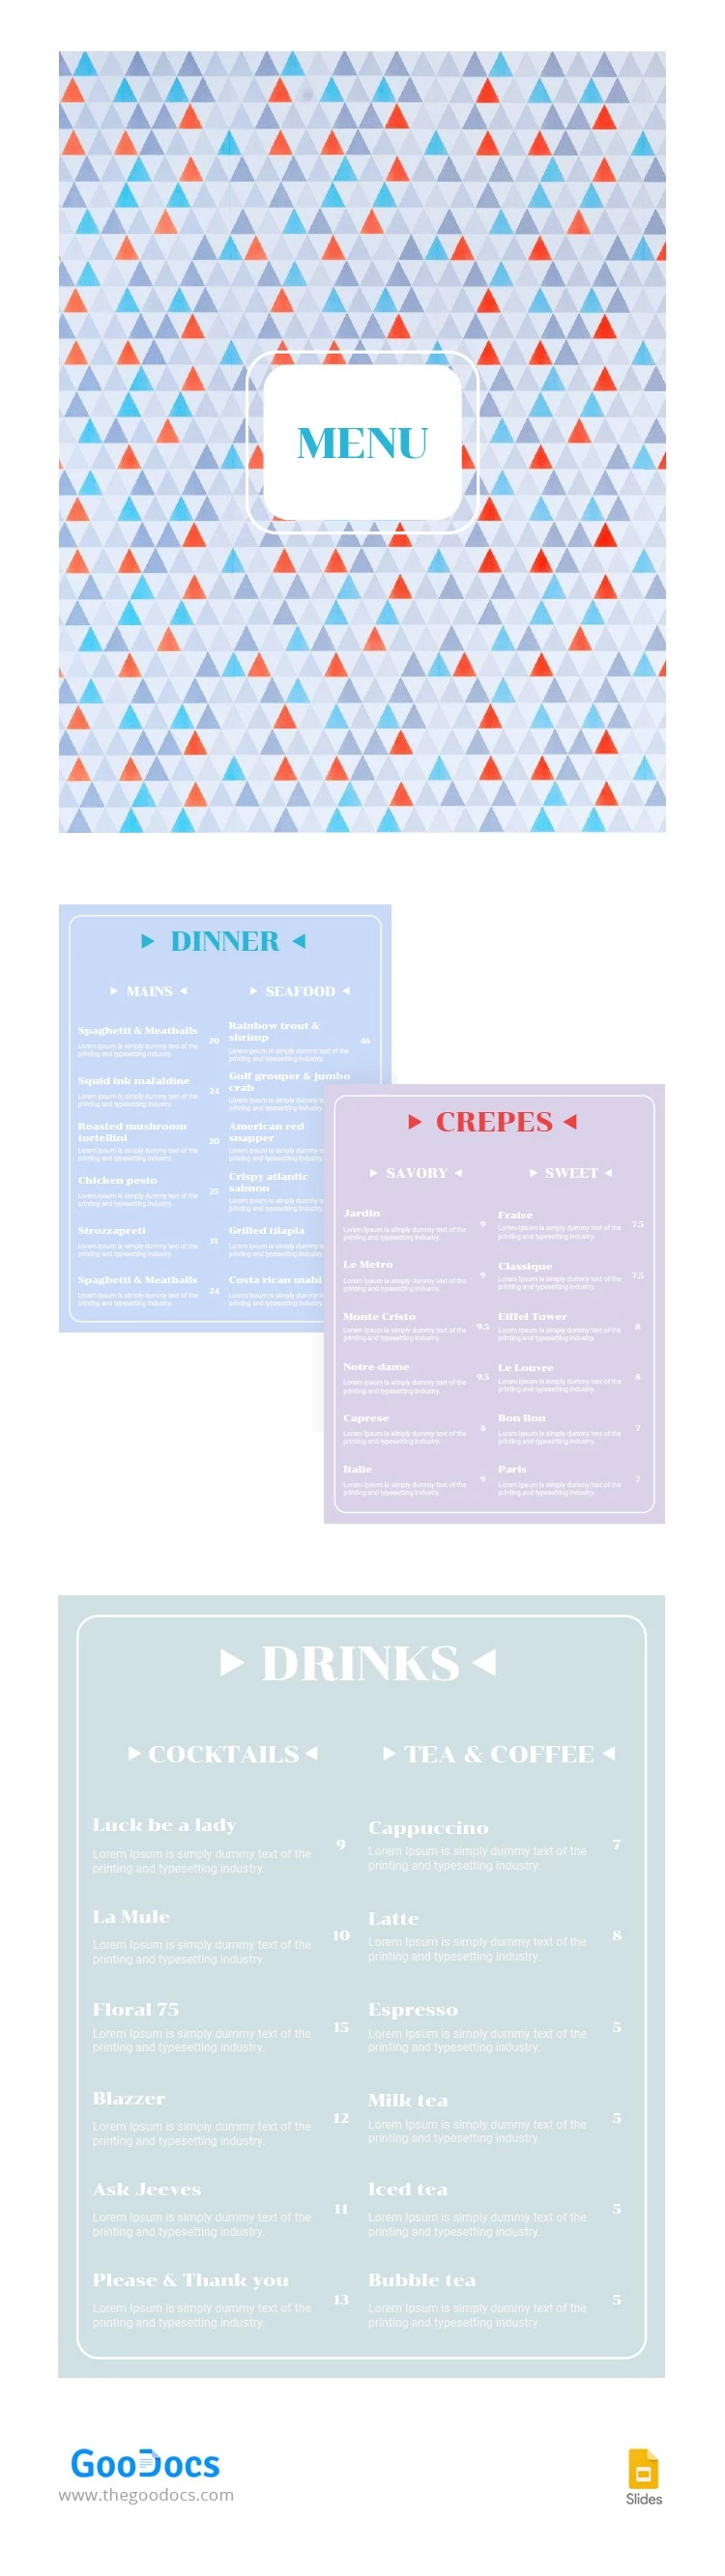 Modern Restaurant Menu - free Google Docs Template - 10062907